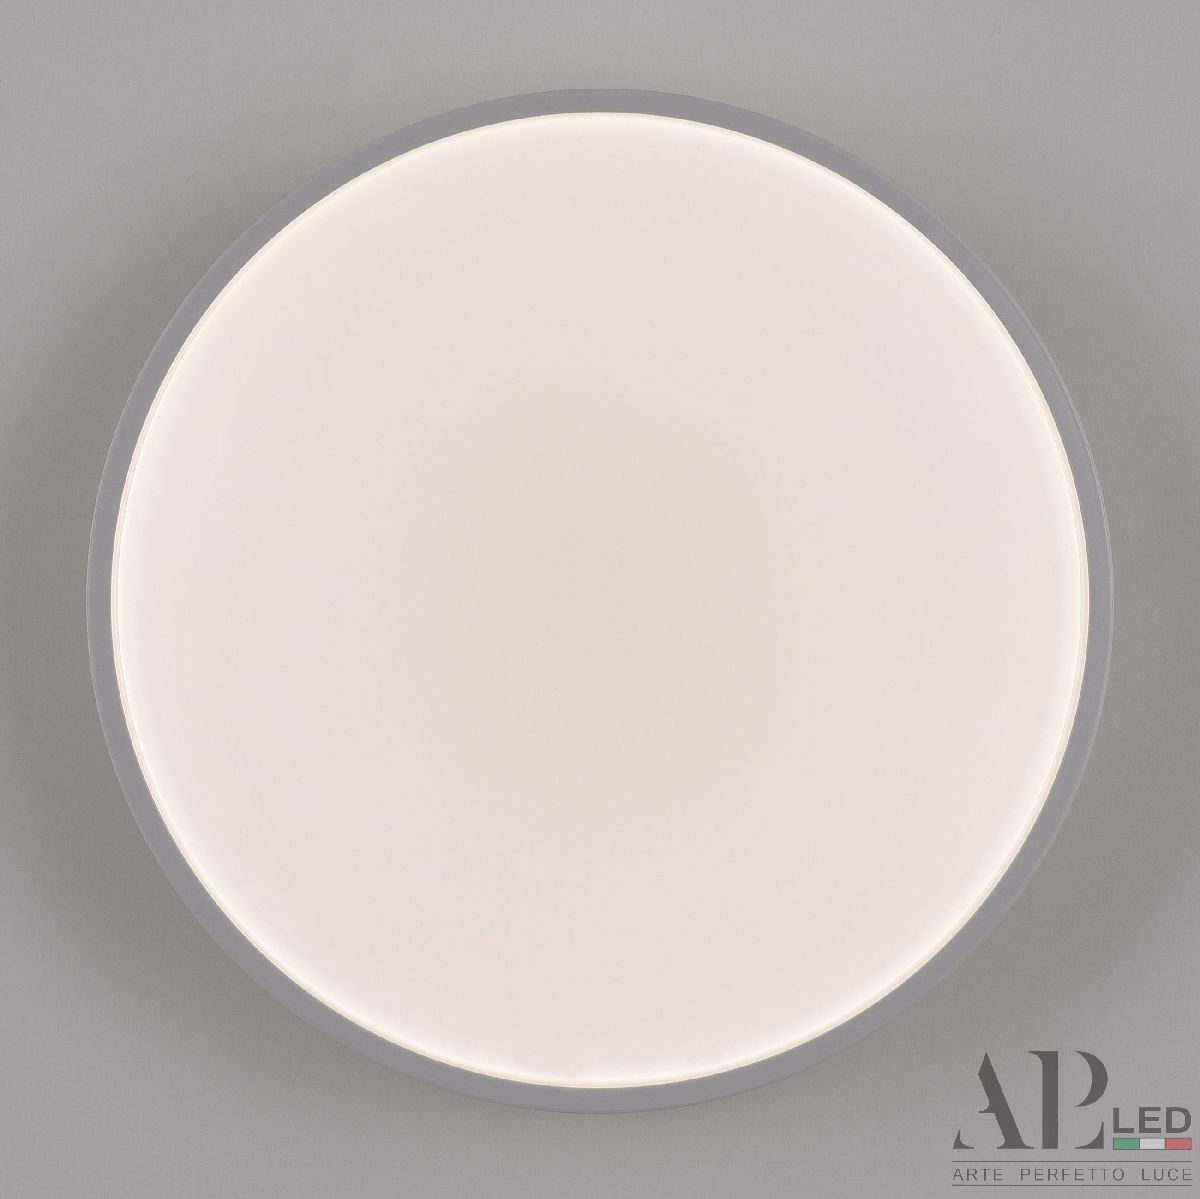 Потолочный светильник Arte Perfetto Luce Toscana 3315.XM302-1-267/12W/4K White TD